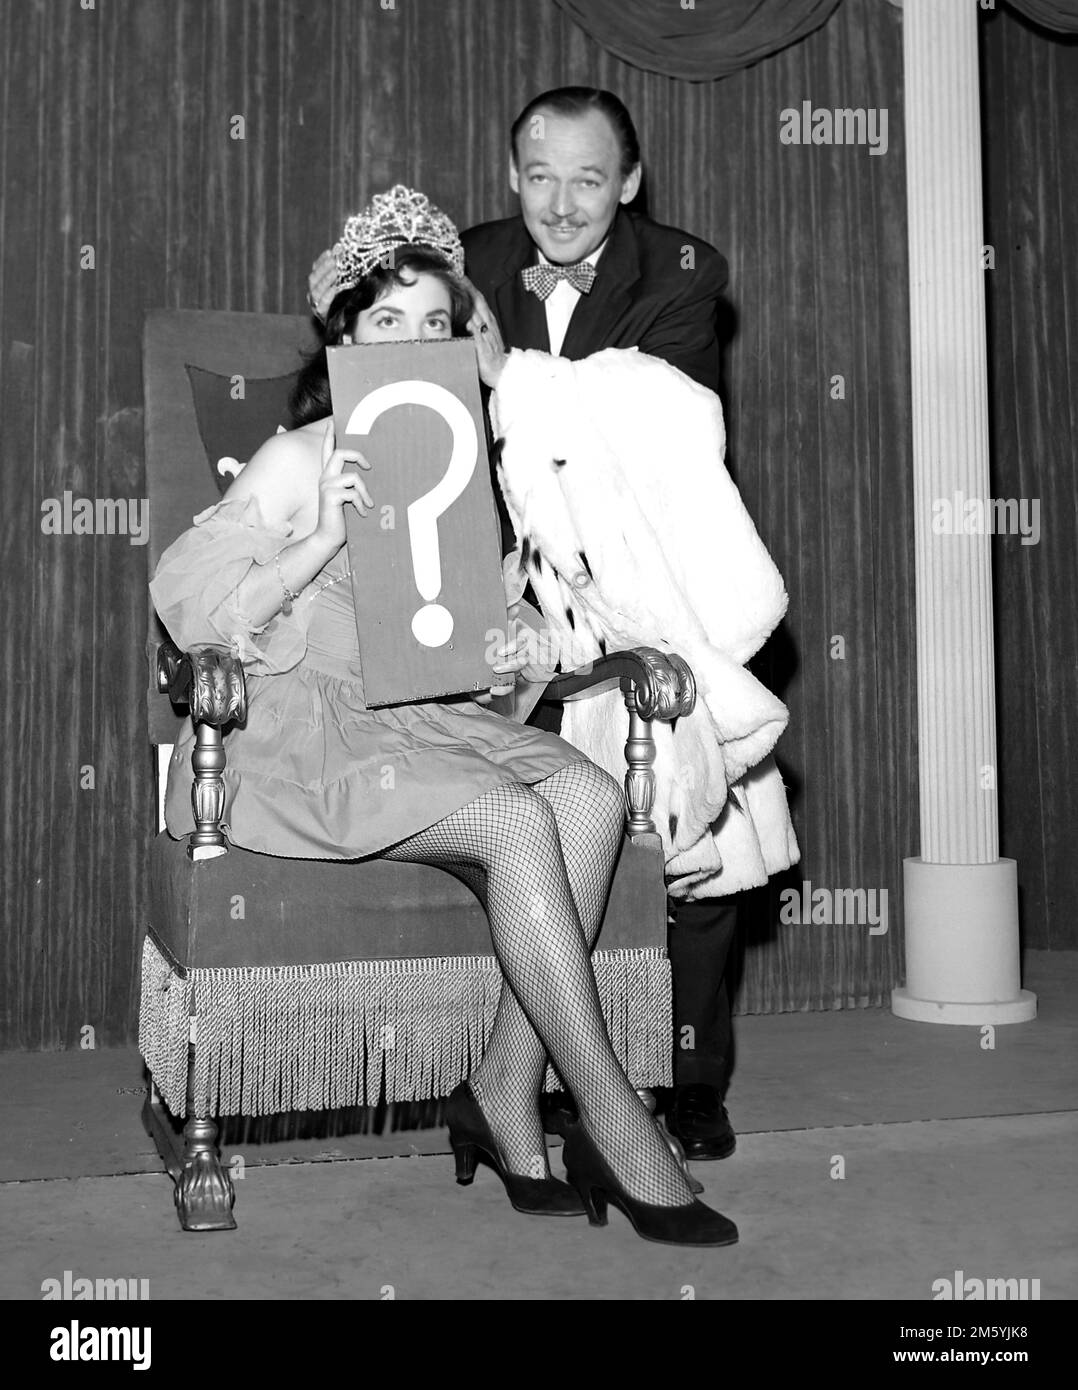 L'hôte Jack Bailey est présenté avec un gagnant dans une photo promotionnelle pour le jeu de télévision Queen for A Day, ca. 1958. Banque D'Images